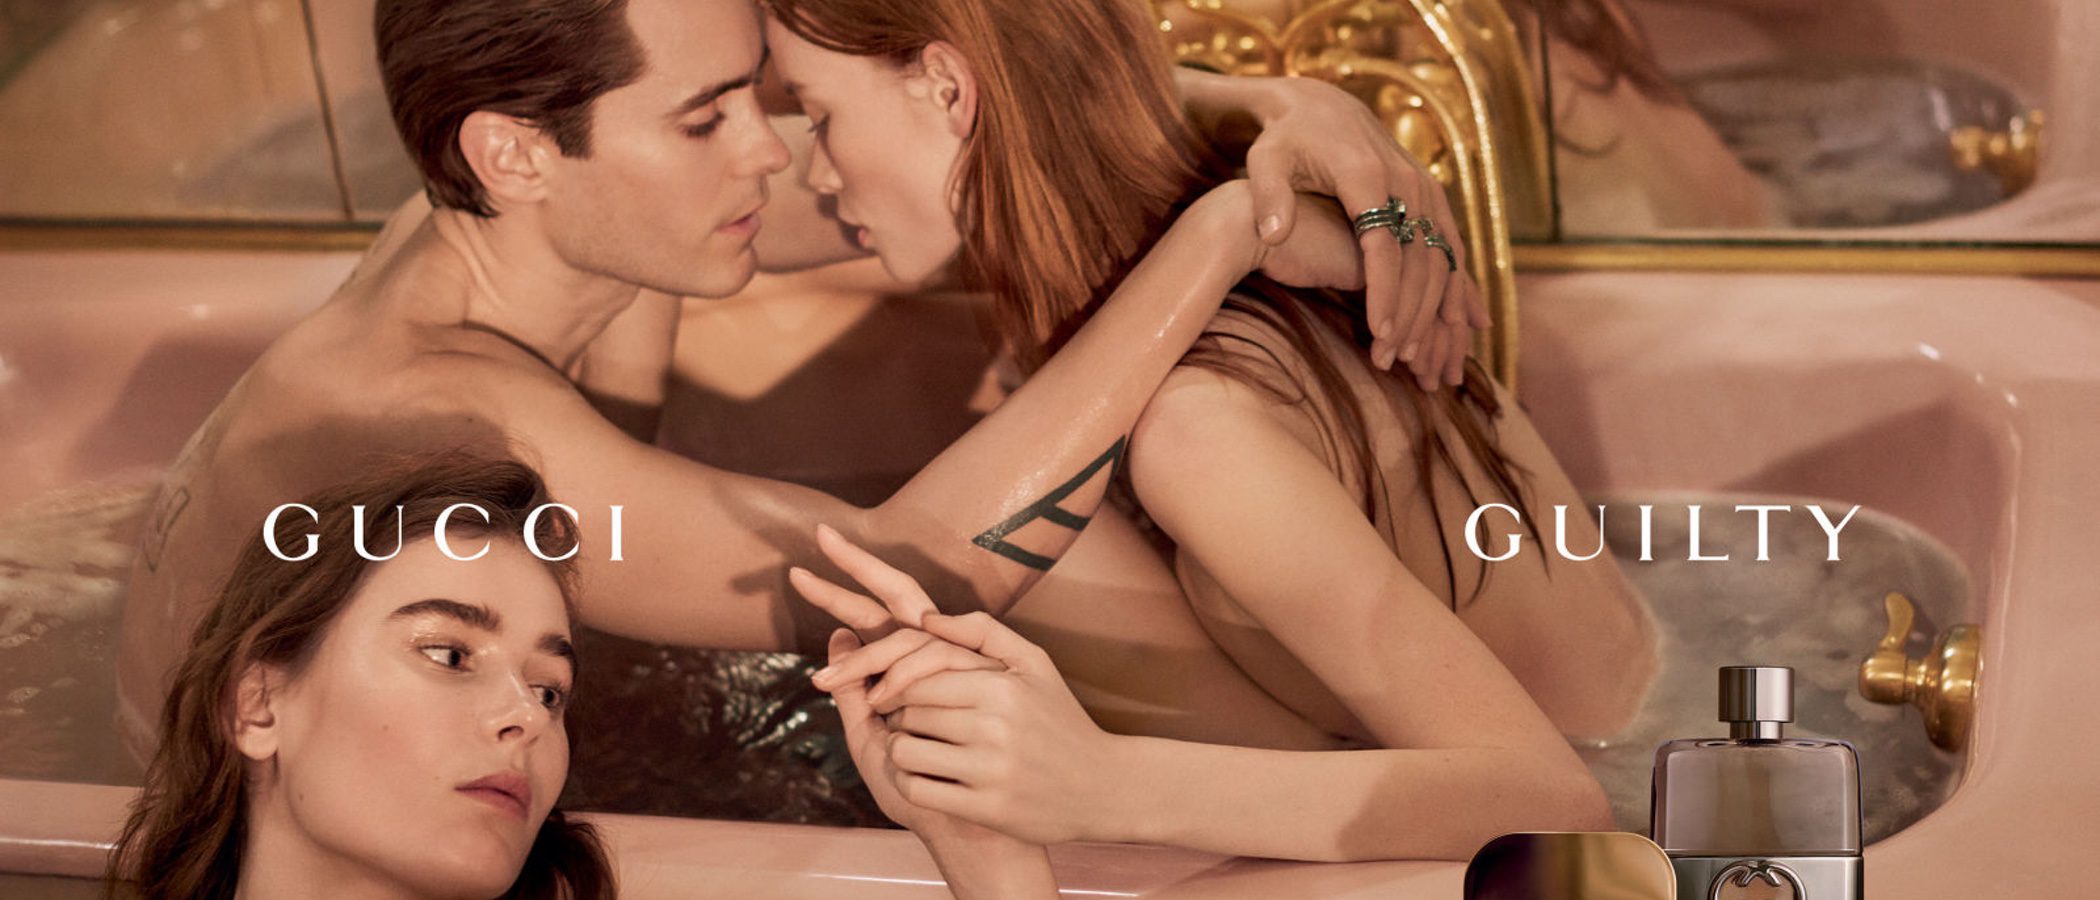 Jared Leto imagen de 'Guilty', el nuevo perfume de Gucci